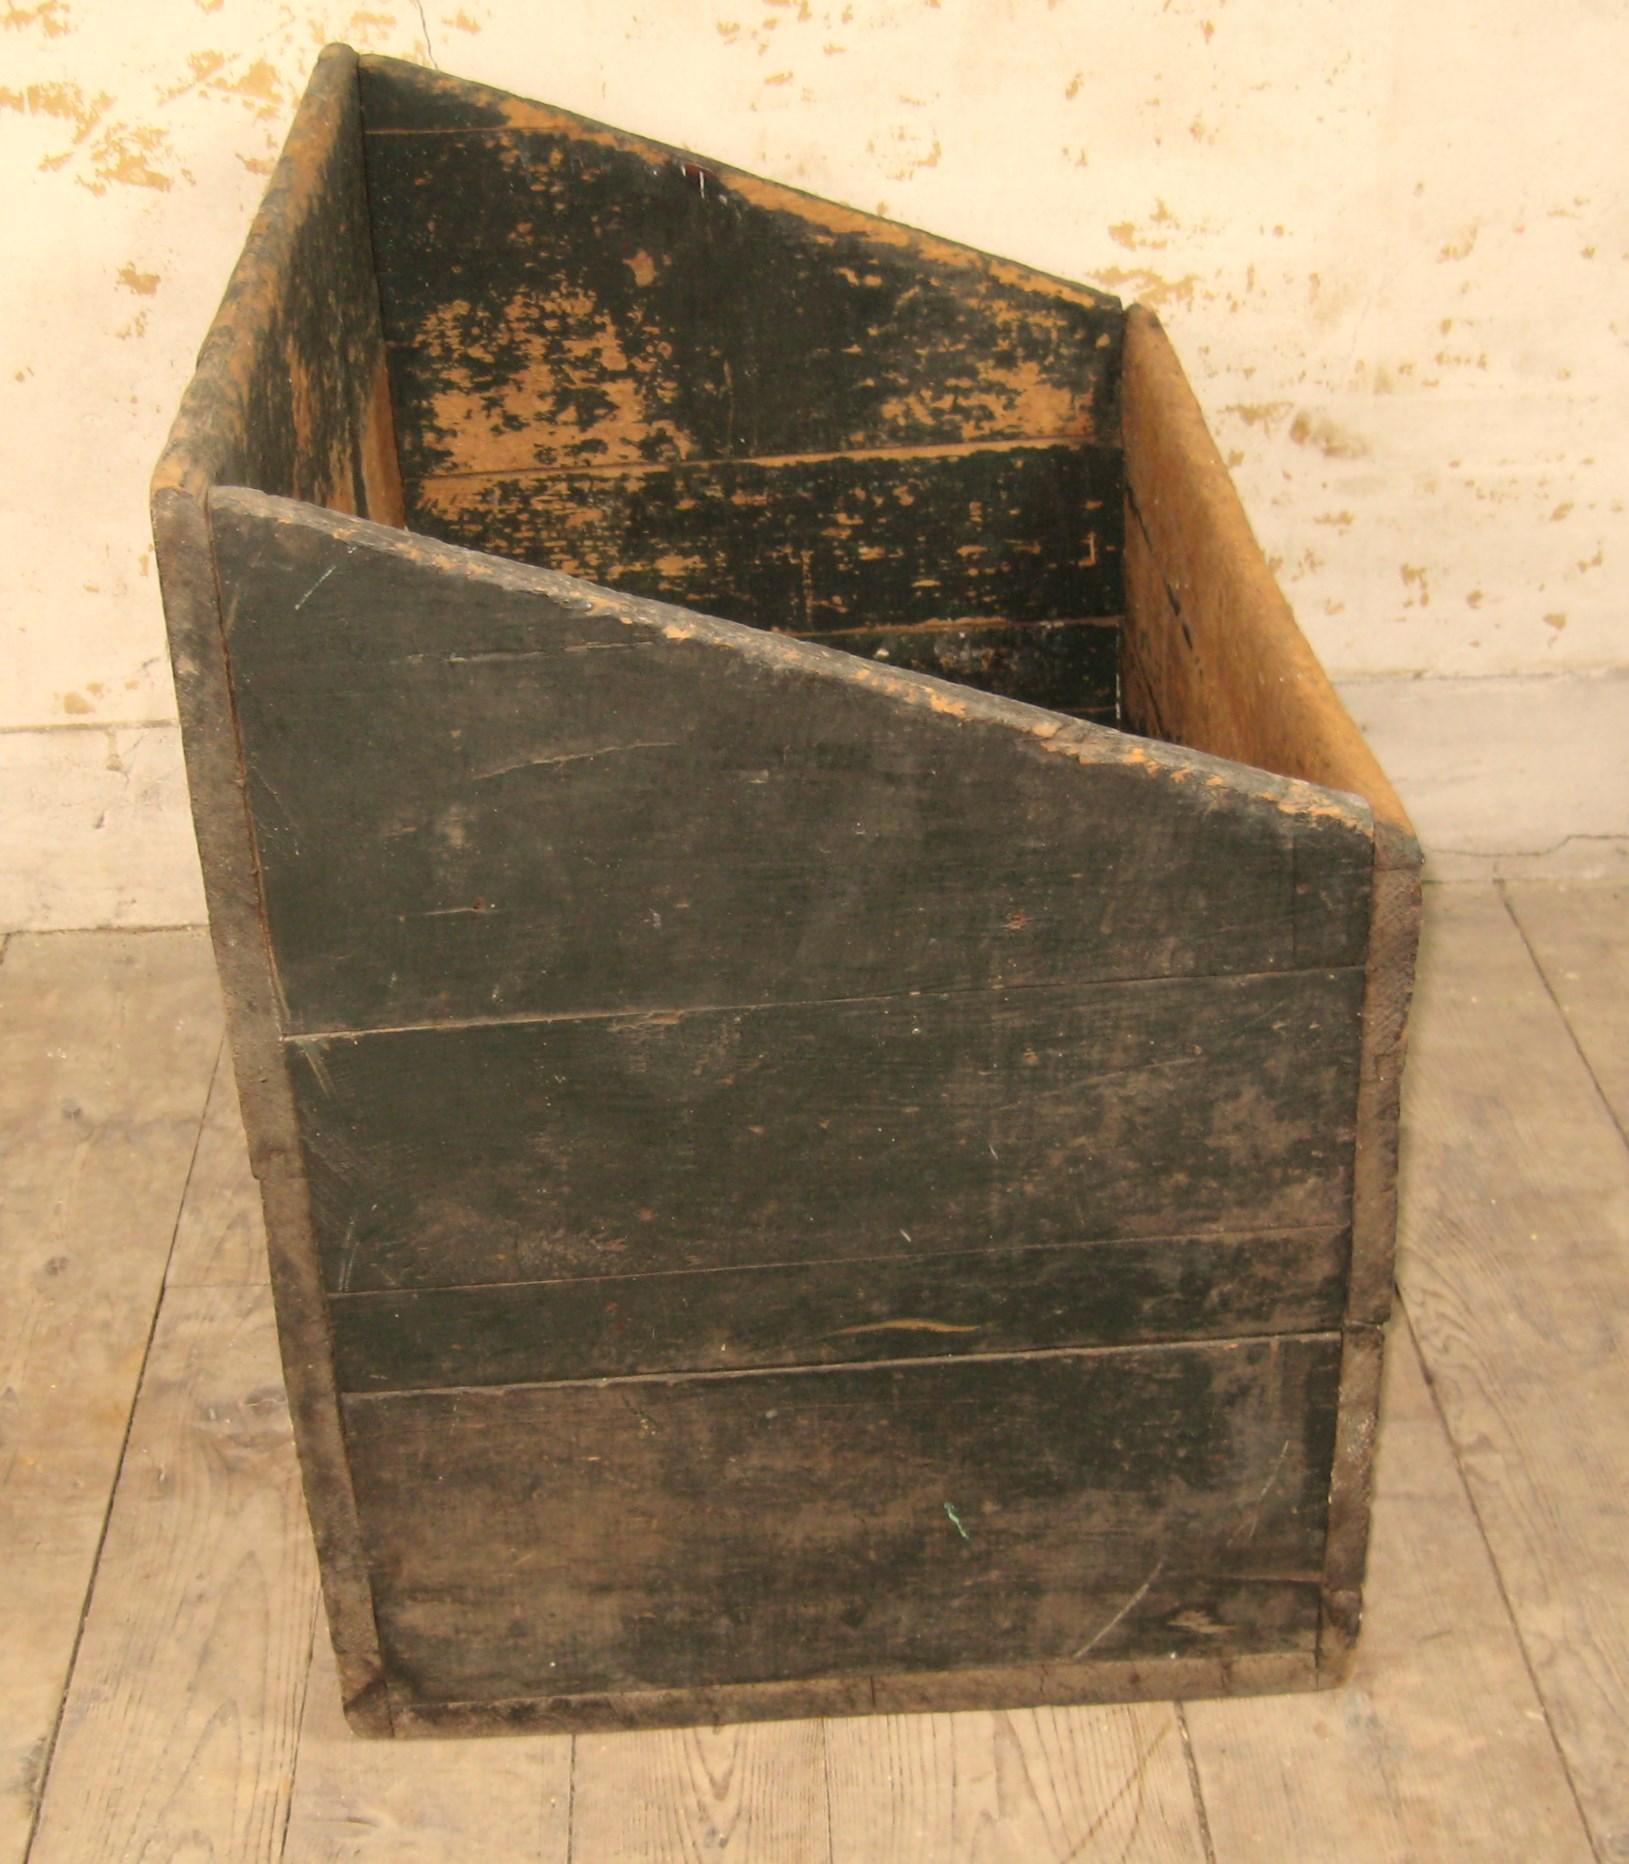 wooden grain bin